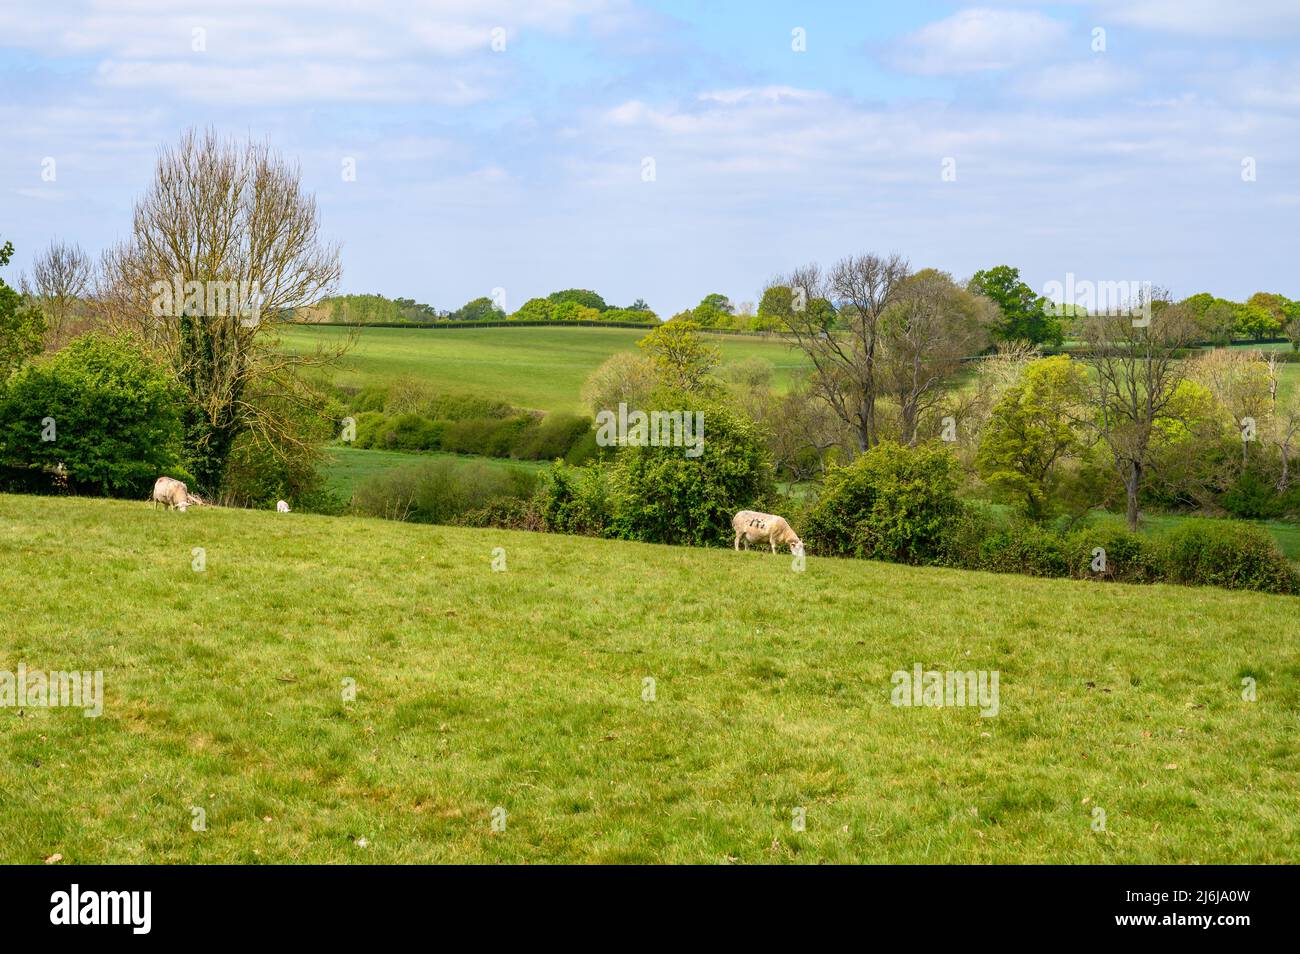 Ein paar Schafe weiden auf einem Feld in einem Land mit Weiden und Wäldern auf sanften Hügeln in der Nähe von Bilingshurst in West Sussex, England. Stockfoto